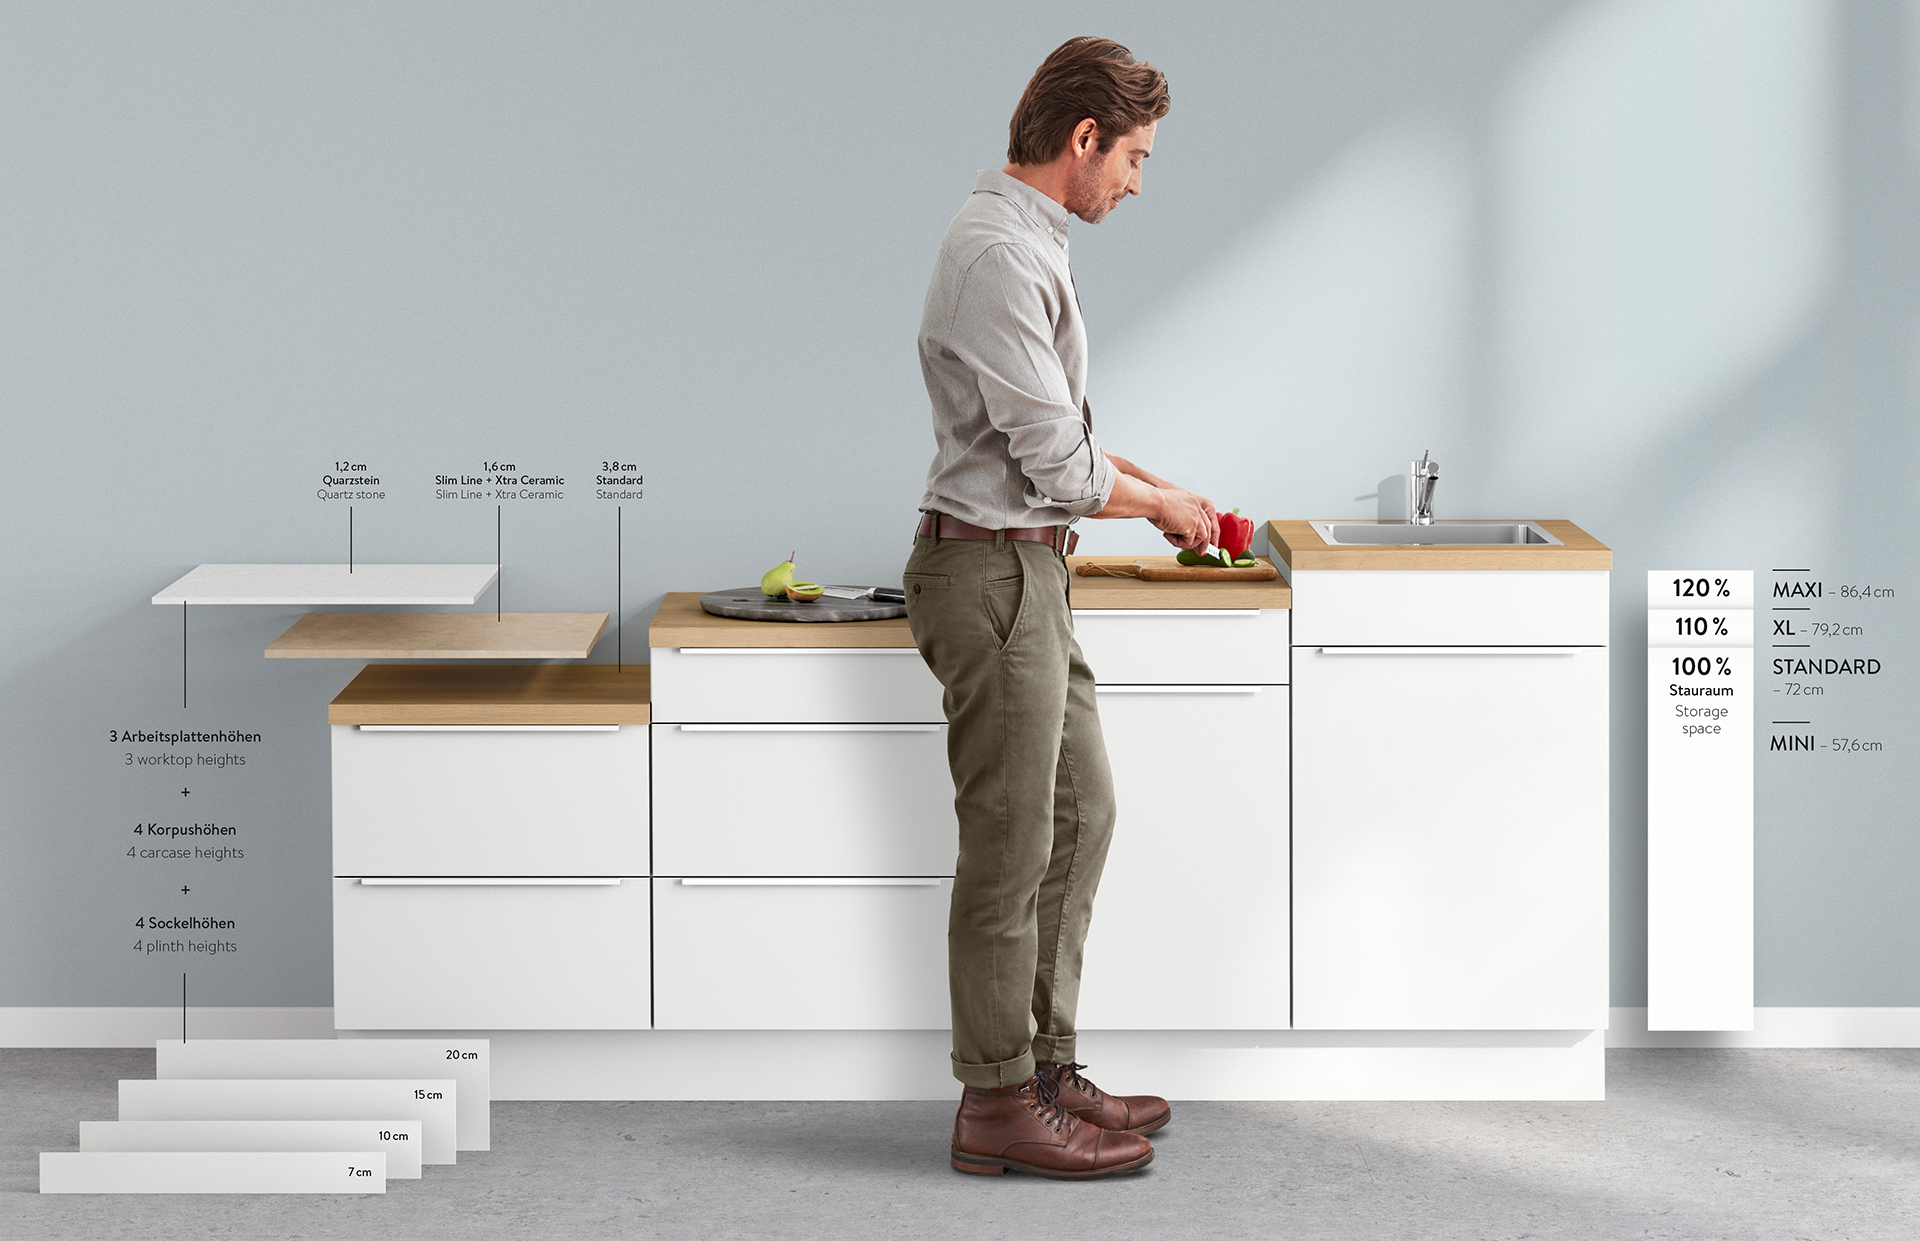 Muž stojí u moderní kuchyňské linky a krájí zeleninu, s grafickými poznámkami popisujícími rozměry a vlastnosti kuchyňského nábytku.